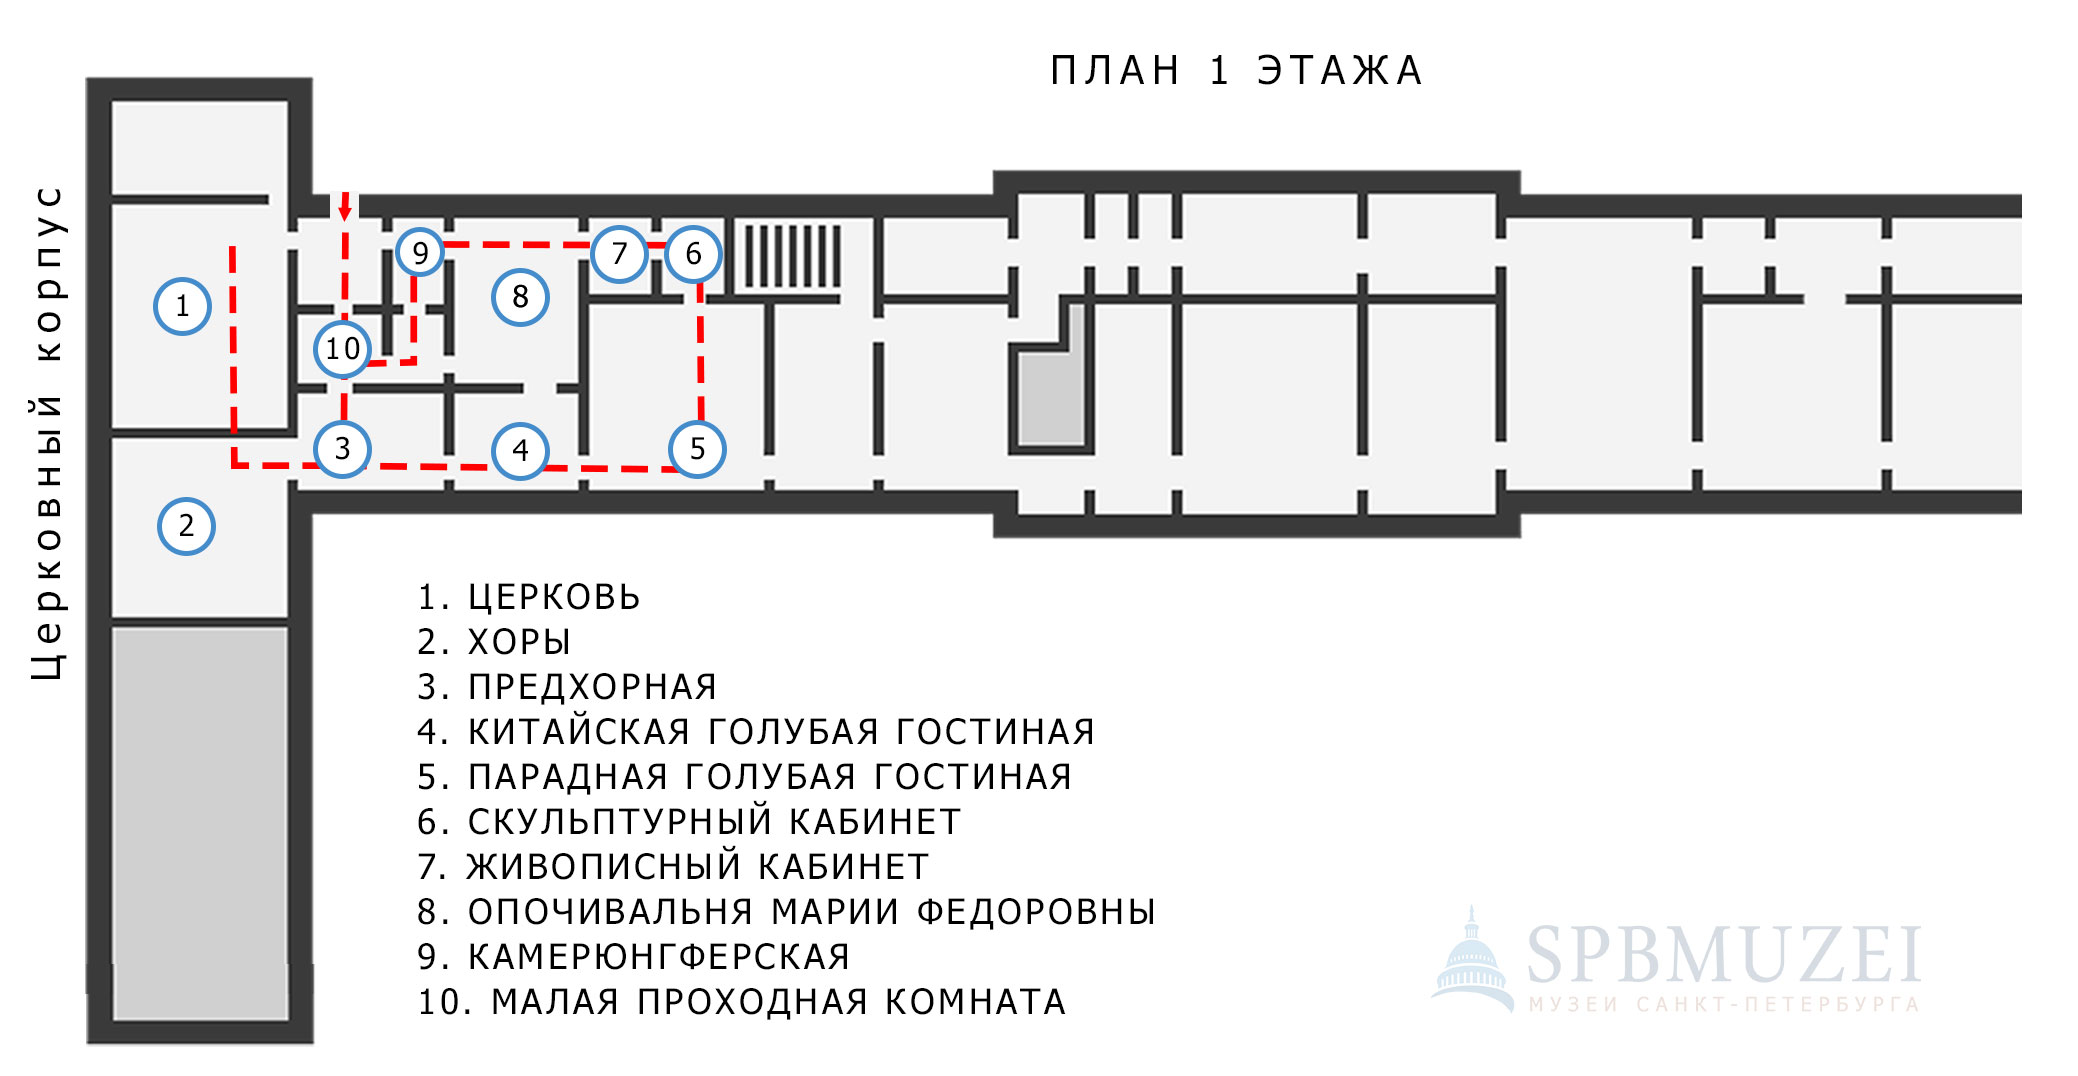 Схема маршрута № 3 Екатерининского дворца в Царском Селе